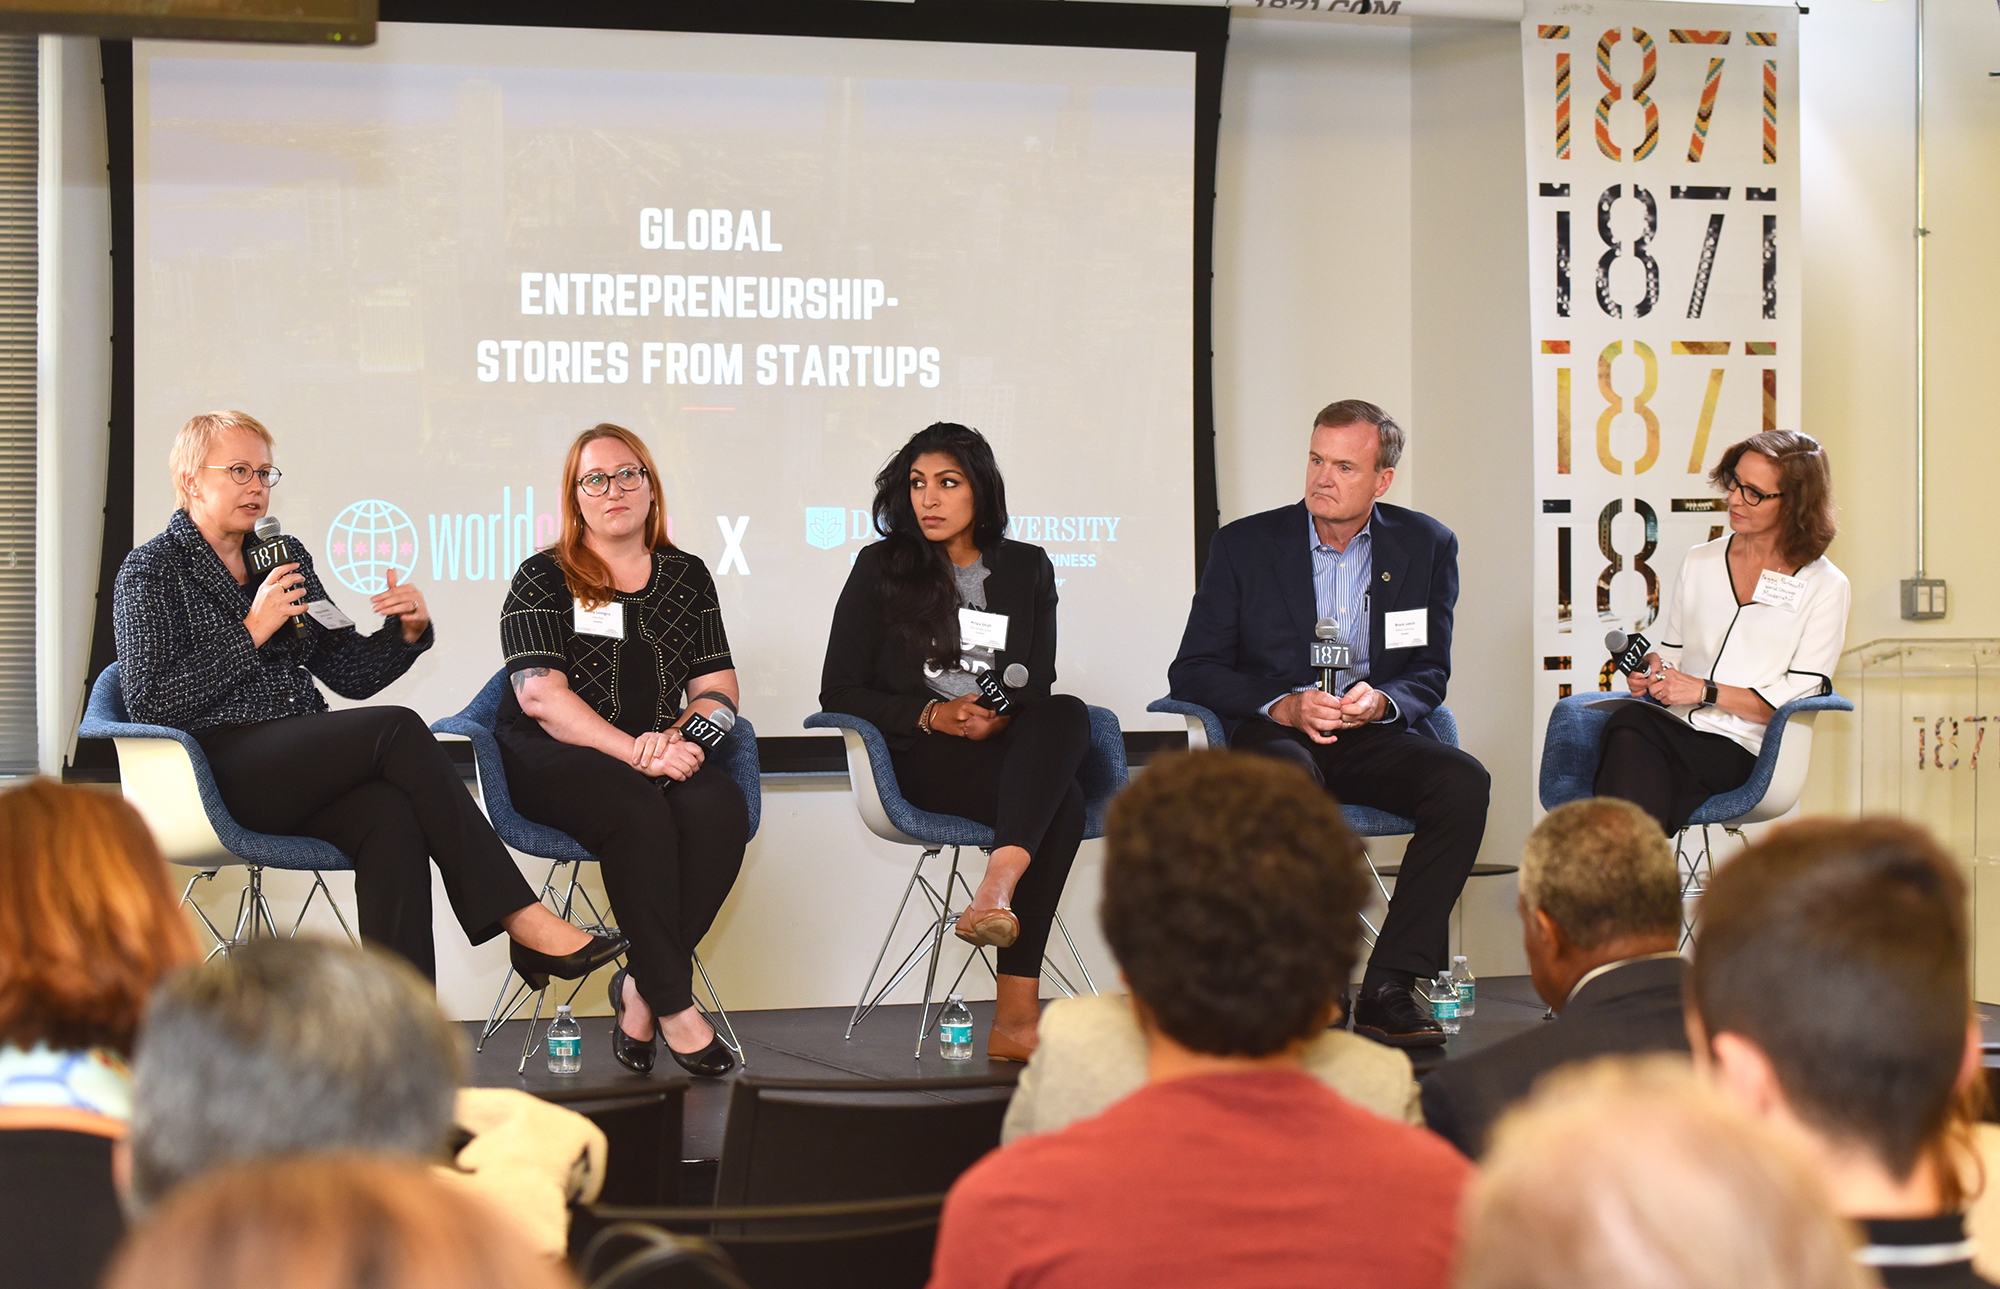 Coleman Entrepreneurship Center hosts "Global Entrepreneurship: Stories From Startups" 